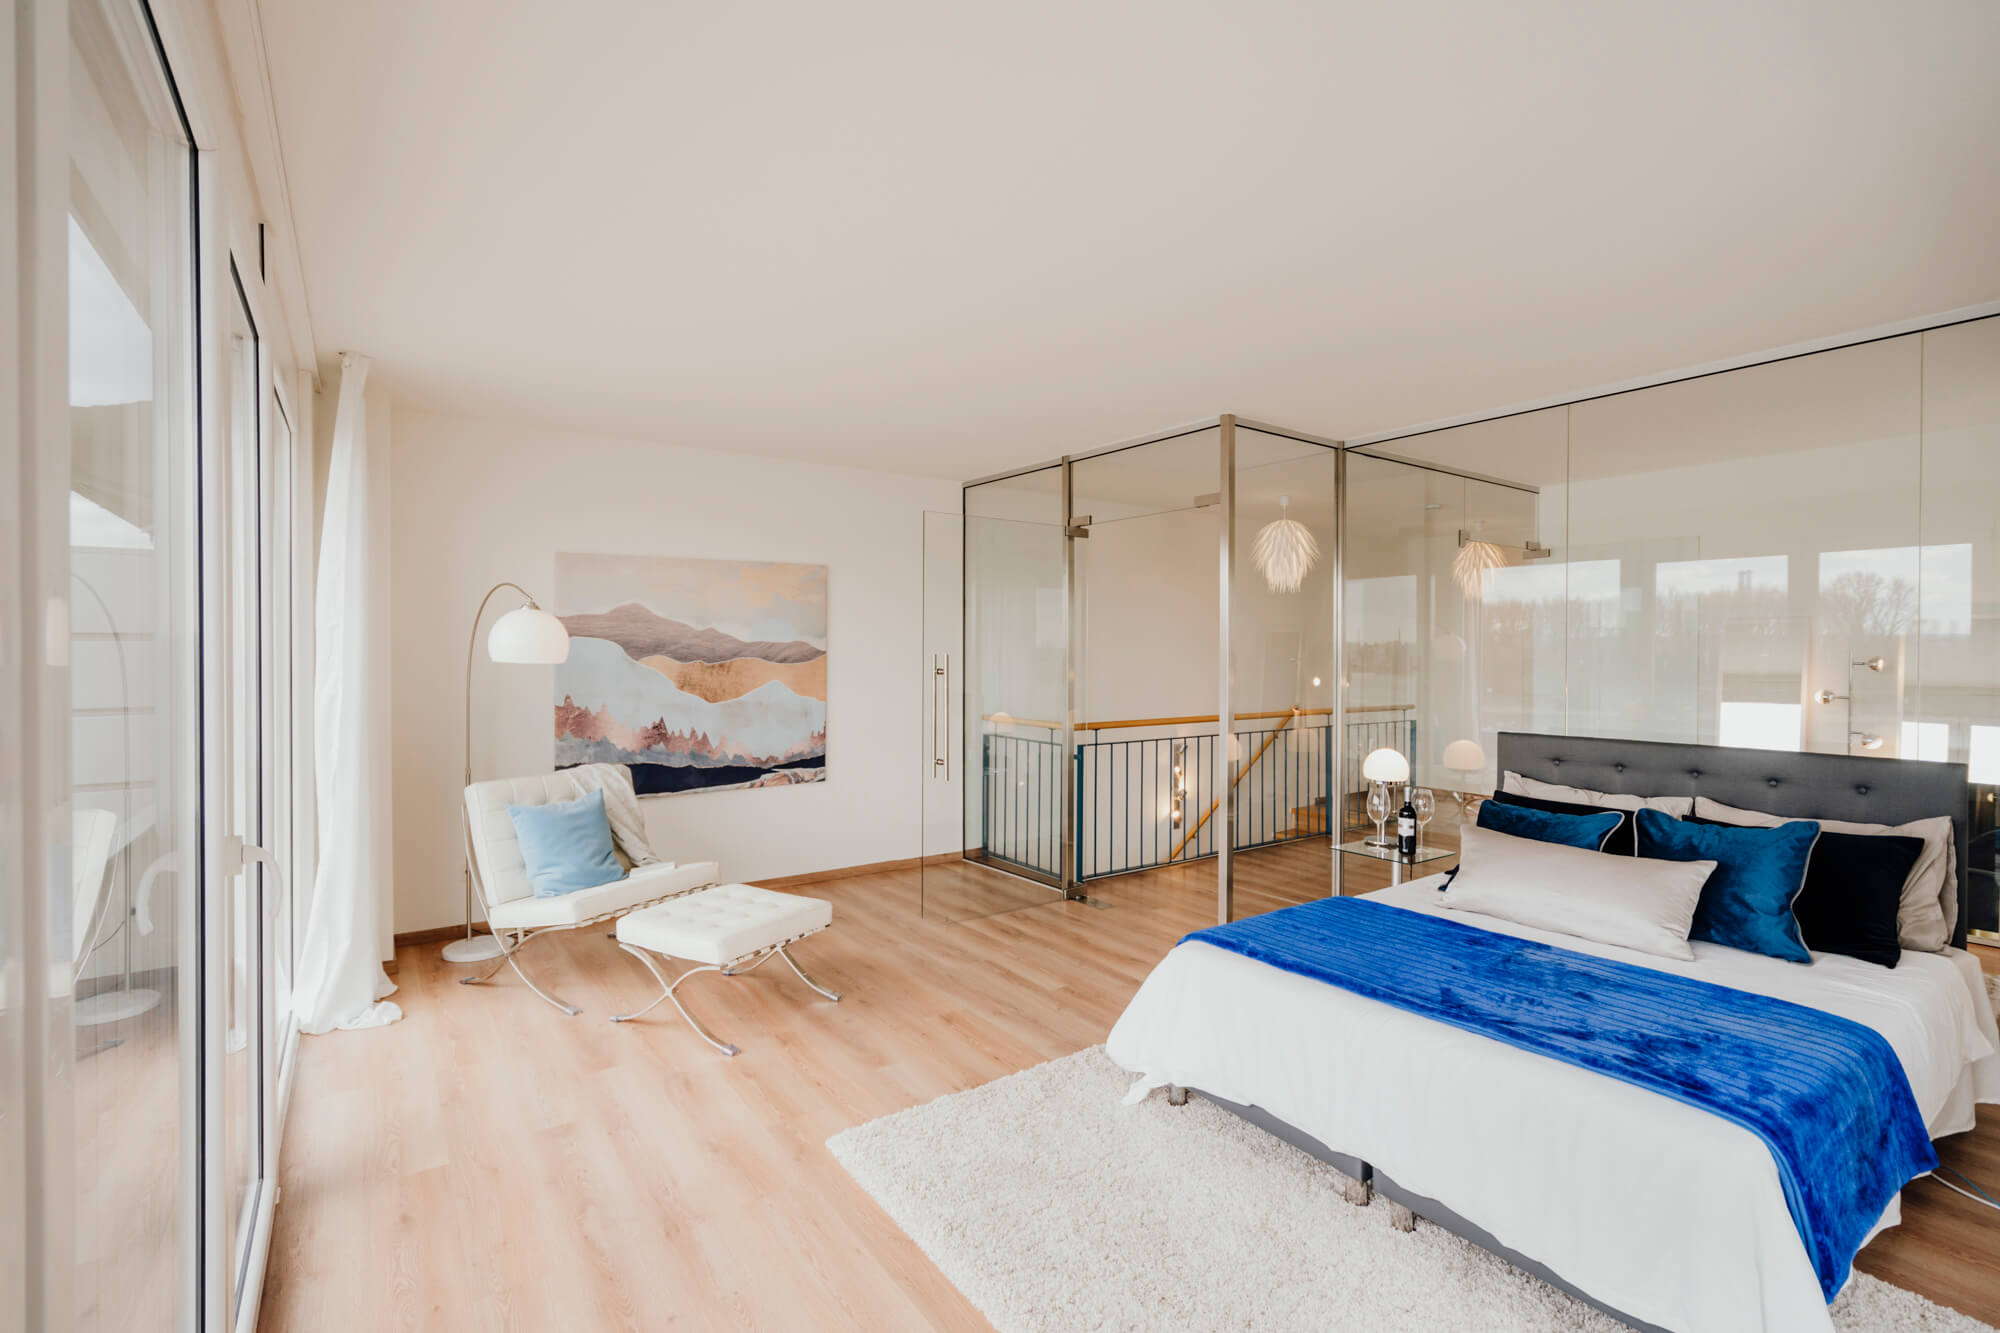 Lisa Treusch Fotografie Mainz Immobilien Fotografie Innenaufnahme Schlafzimmer in Blautönen dekoriert mit Blick auf Bett, Sessel und Treppenaufgang